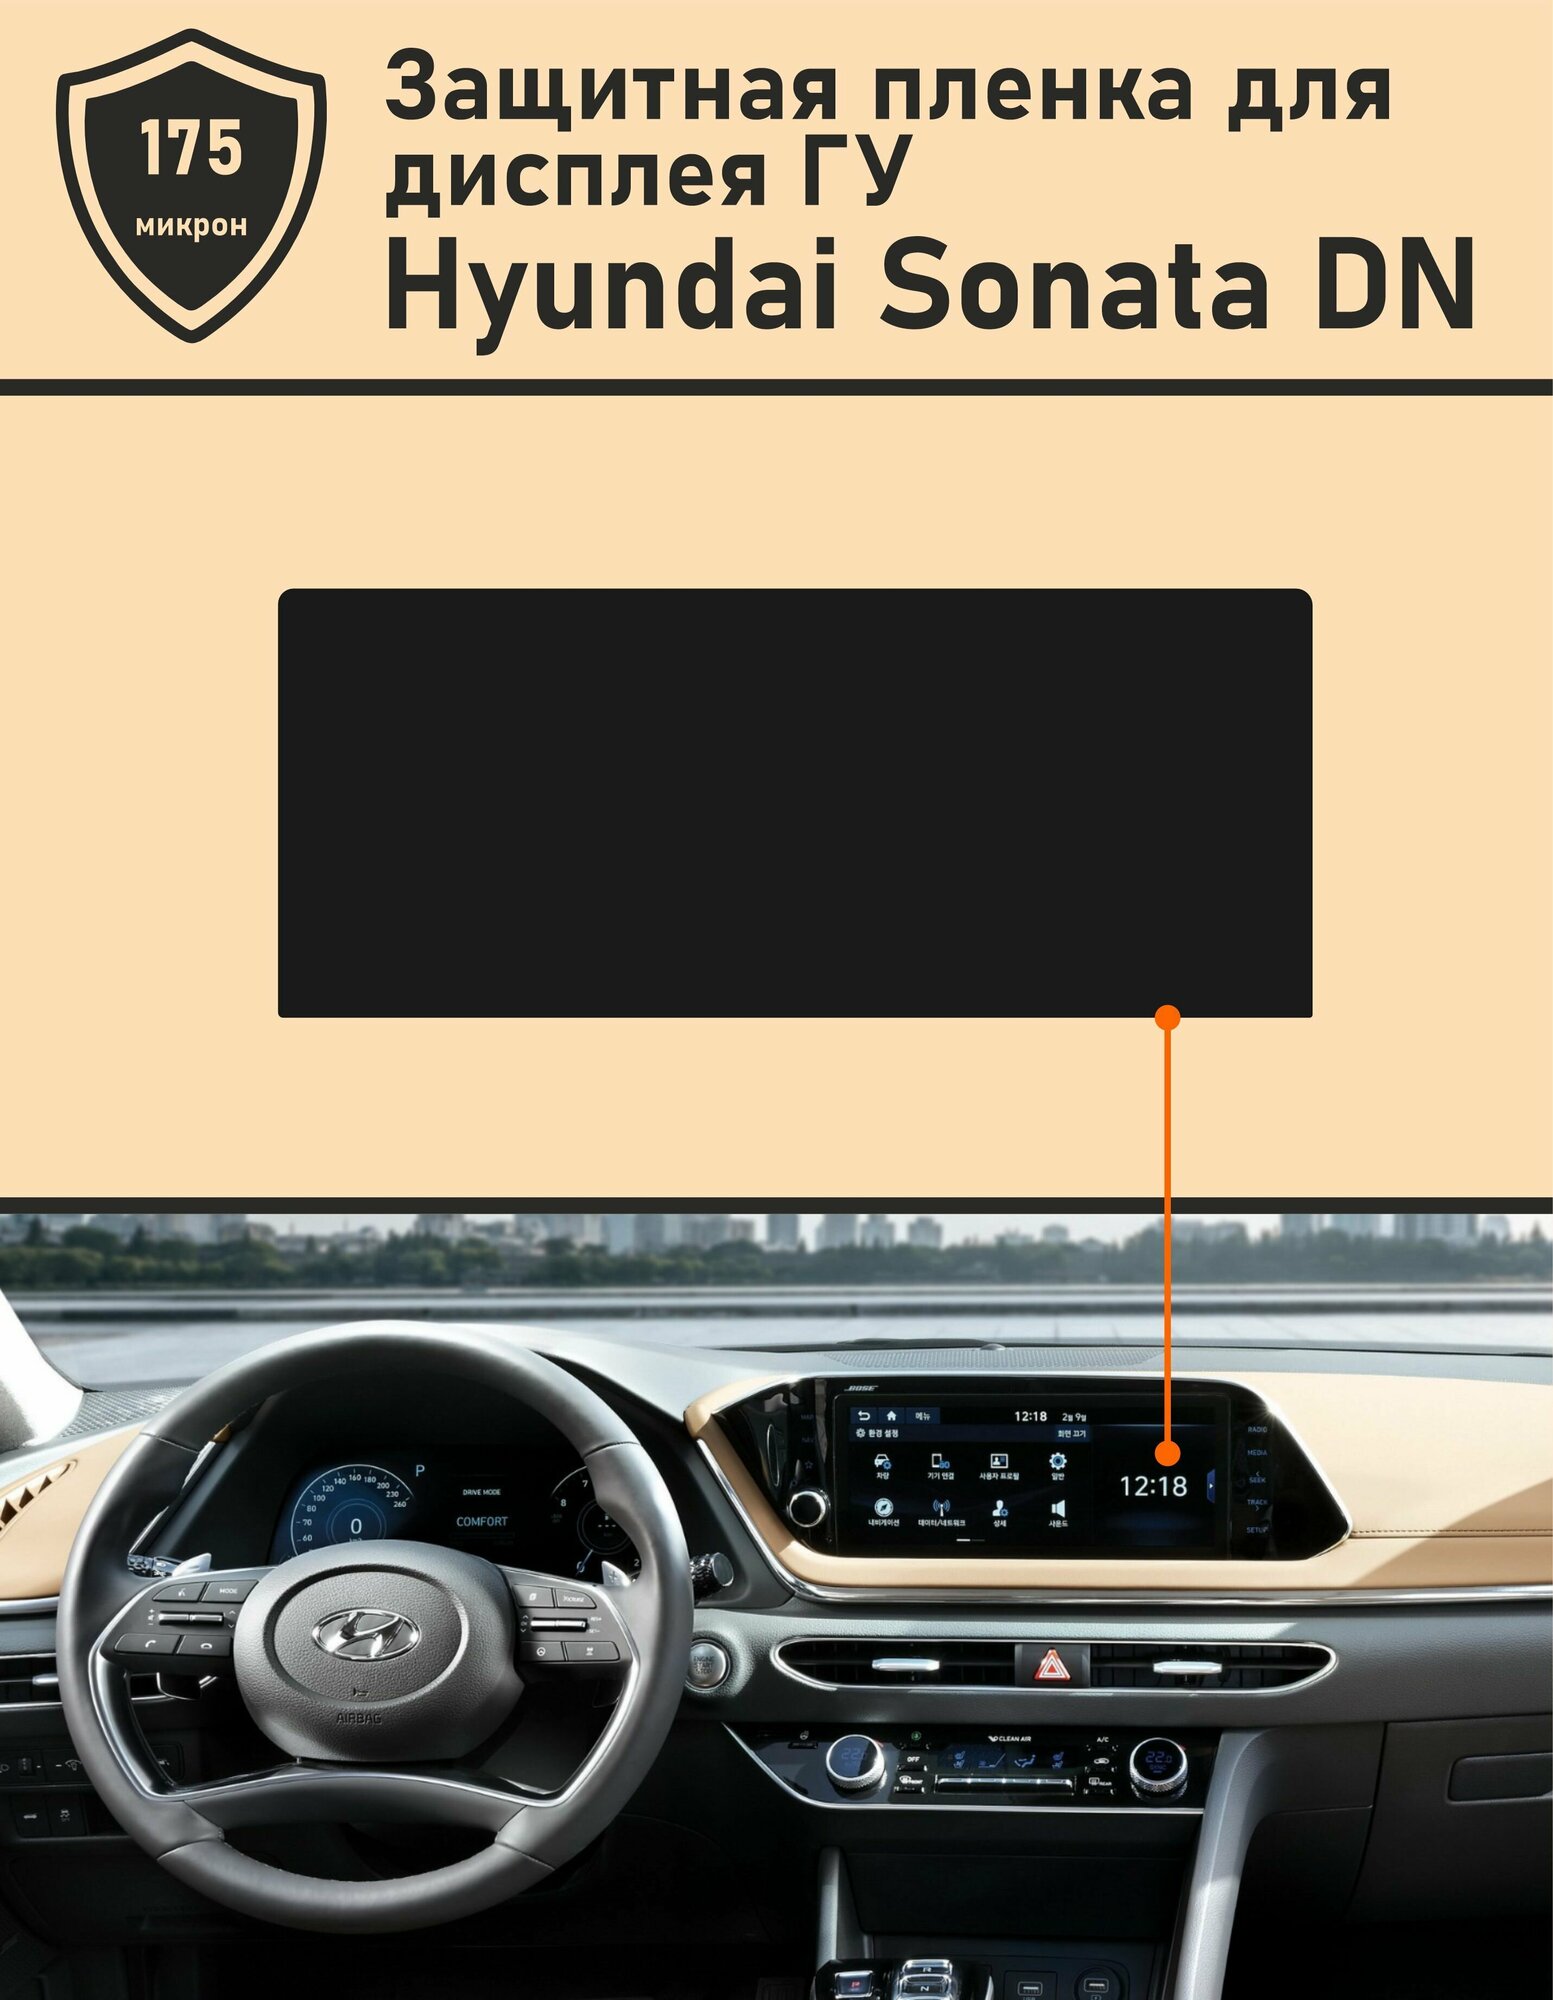 Hyundai Sonata DN/Защитная пленка для дисплея ГУ